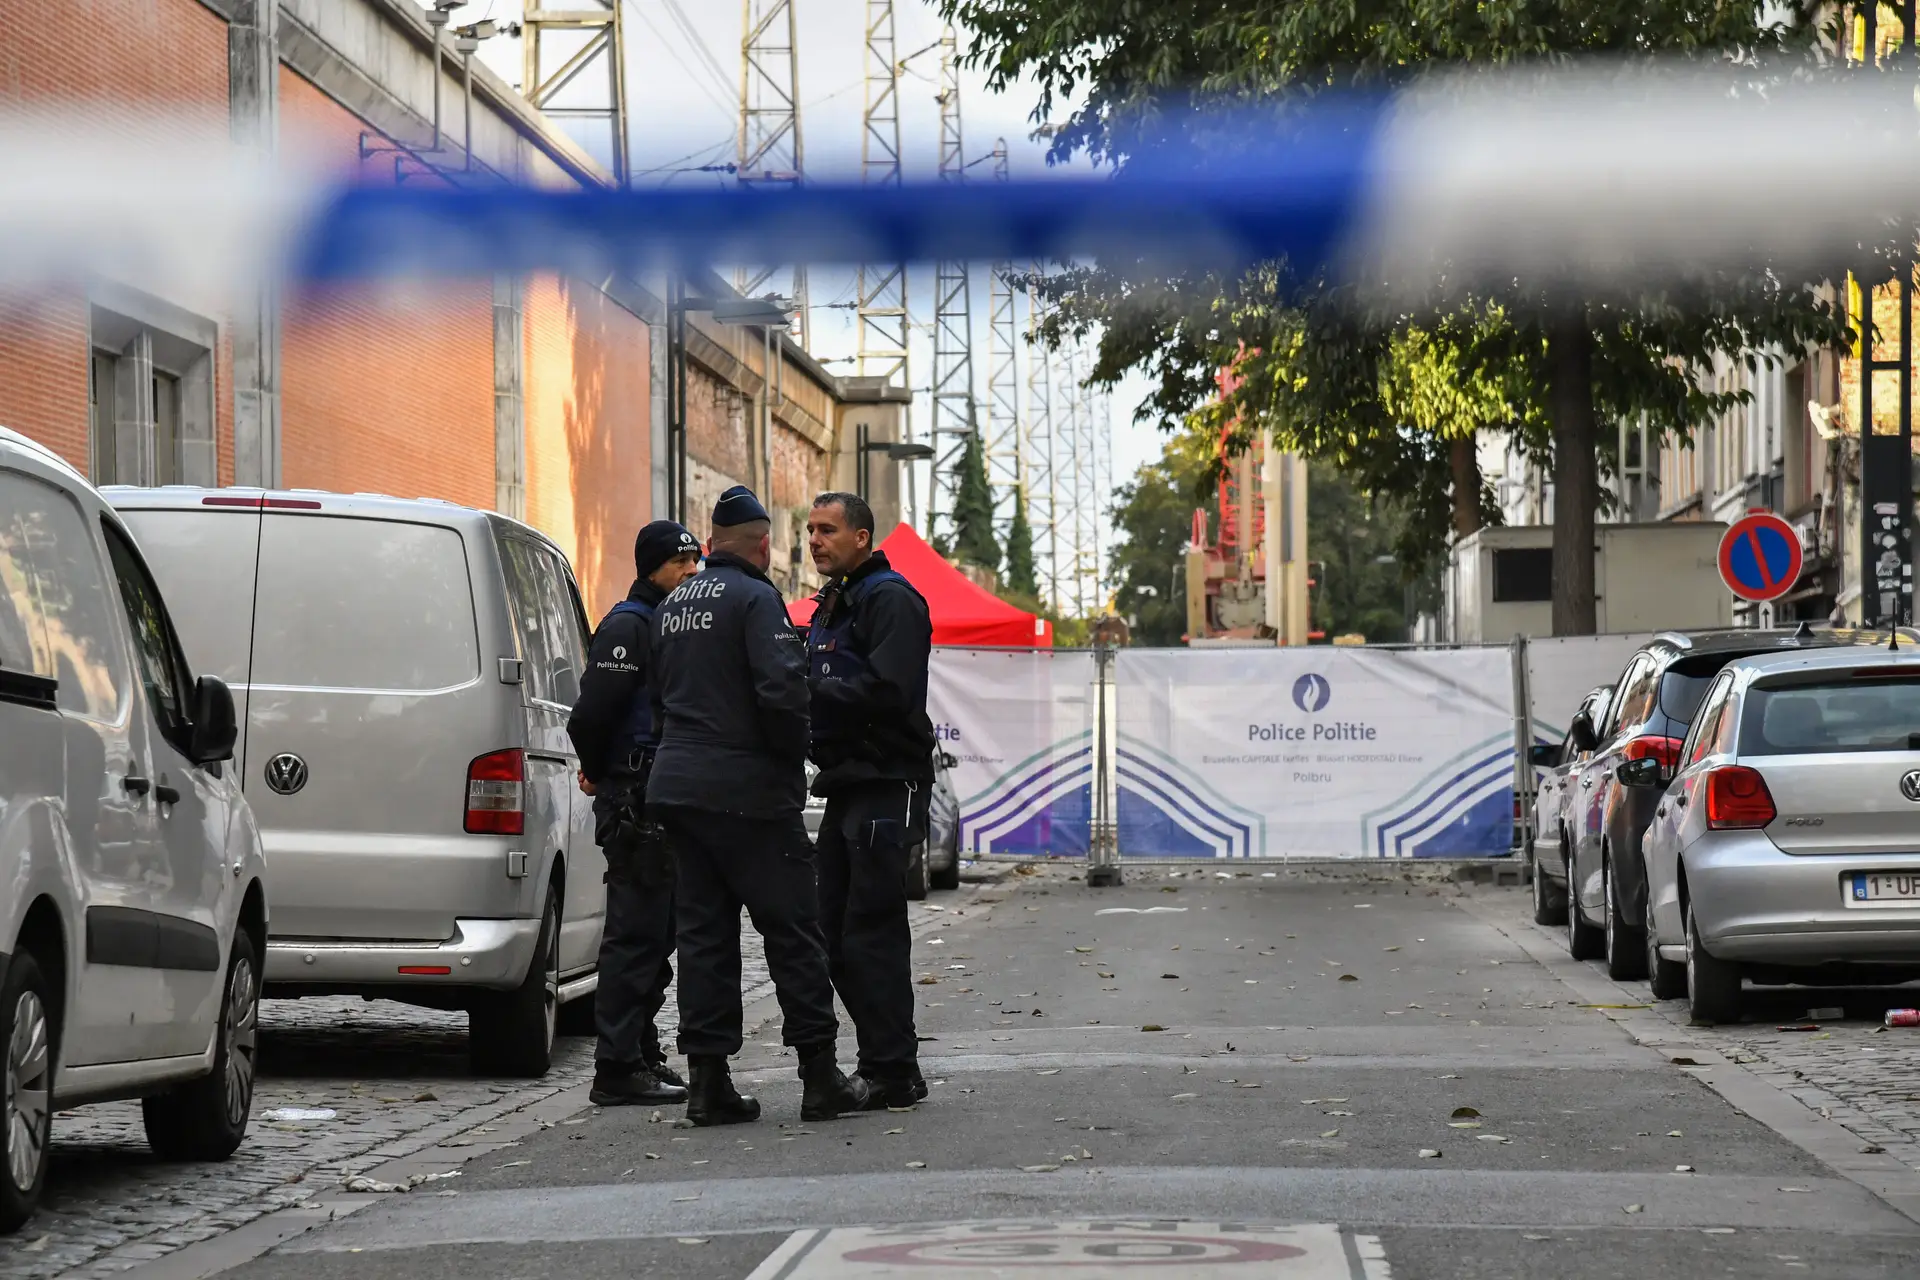 Homem que matou polícia na Bélgica tinha ido pedir ajuda à esquadra